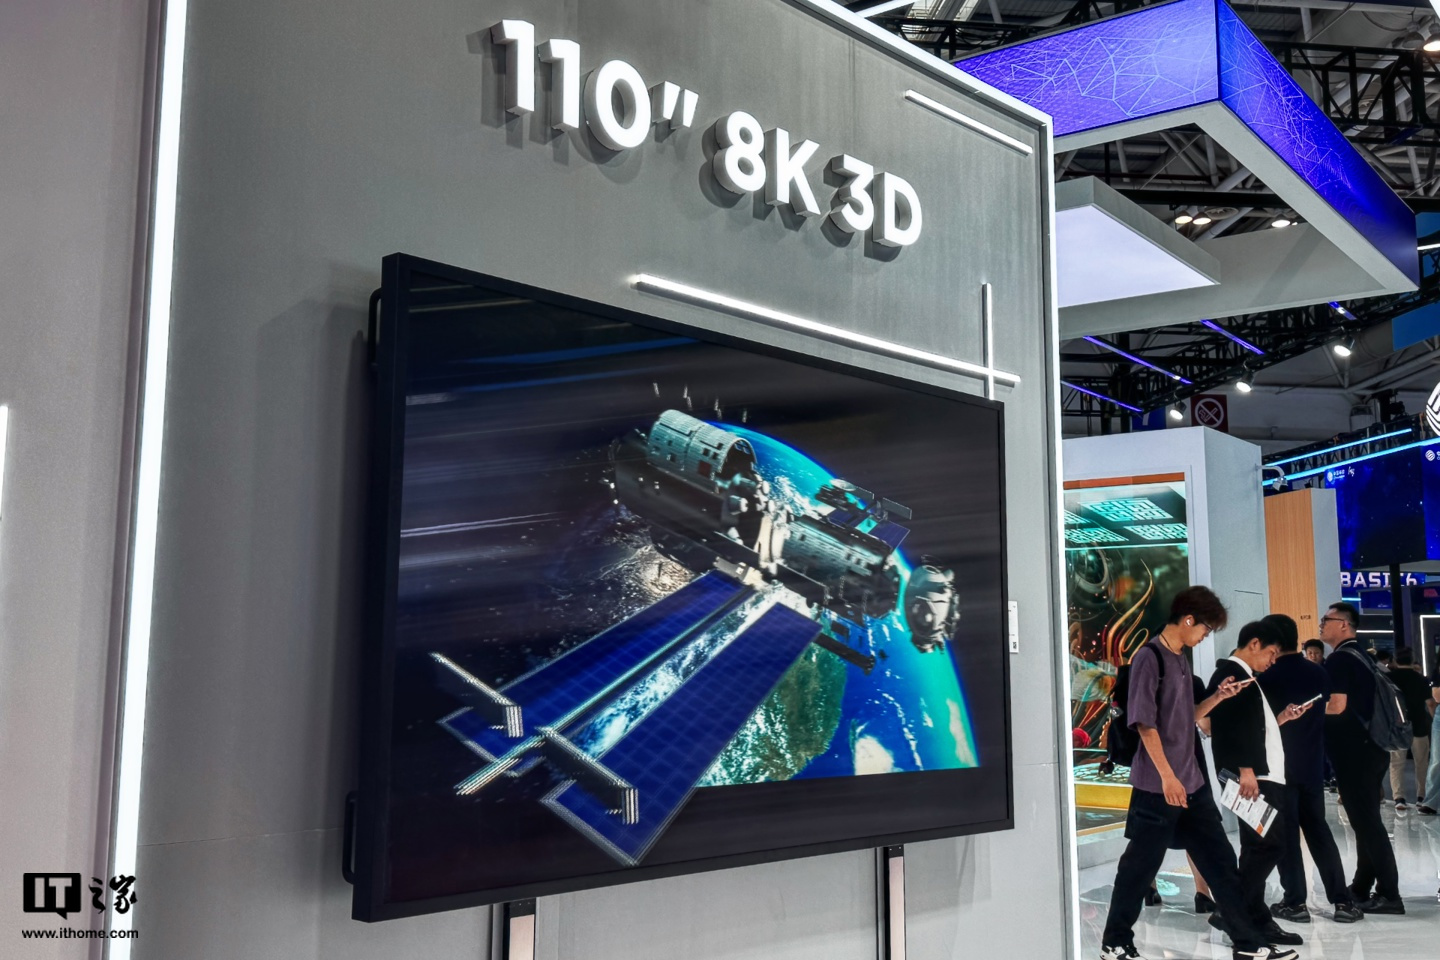 京东方 BOE 亮相 2024 数字中国建设峰会，展示 110 英寸 8K 裸眼 3D 电视等产品